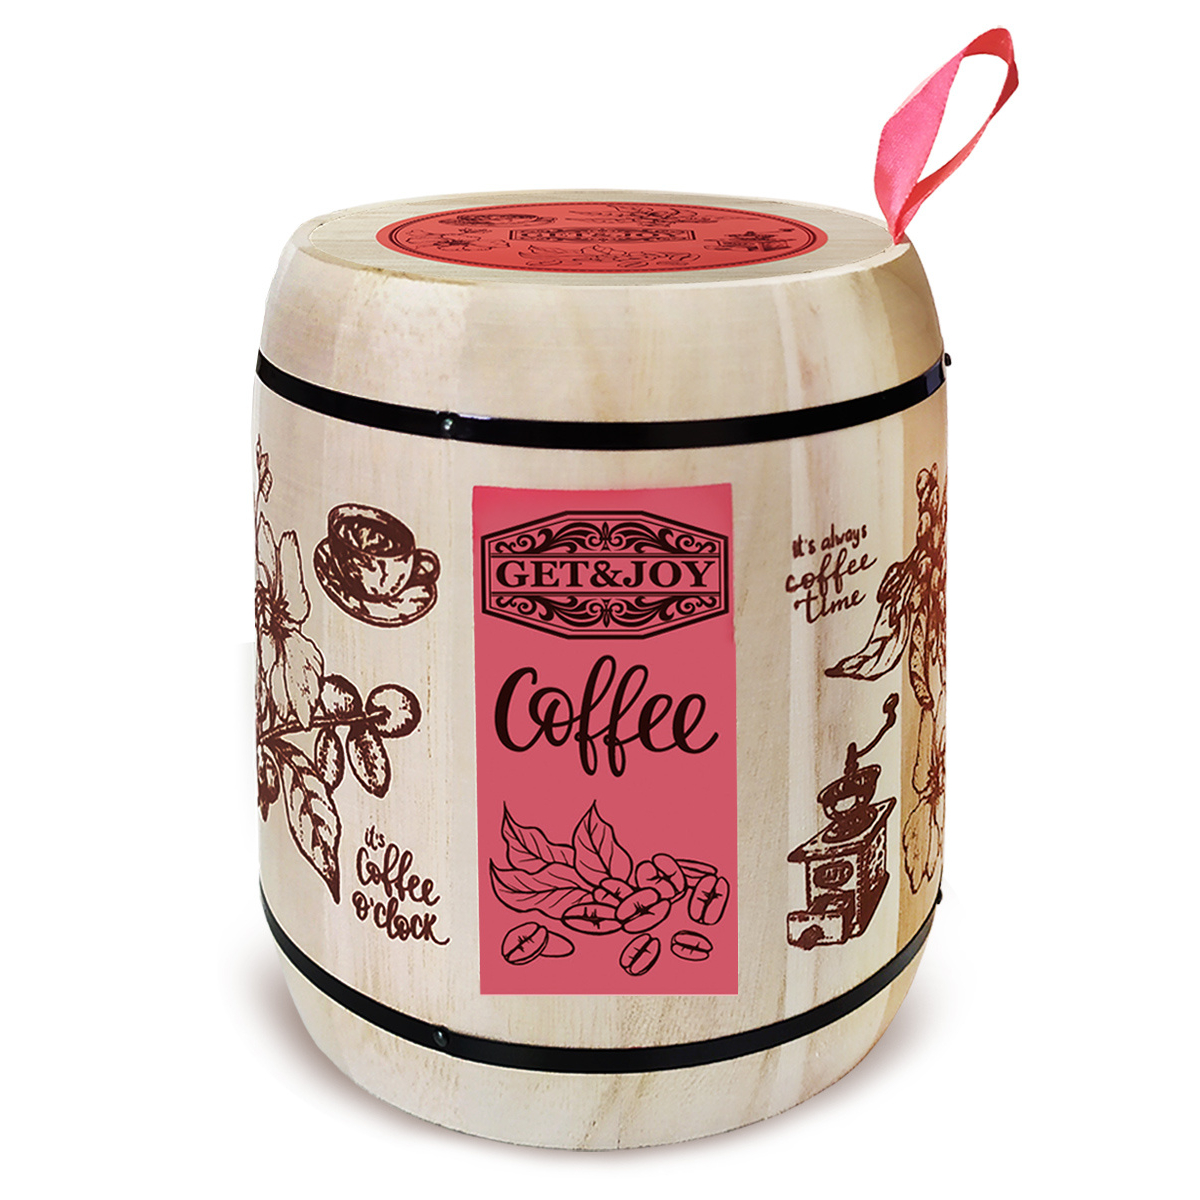 Кофе молотый Get&Joy Ирландский крем, розовый бочонок, 150 г кофе brai gran ирландский крем свежеобжаренный молотый в фильтр пакете 8 шт по 8 гр